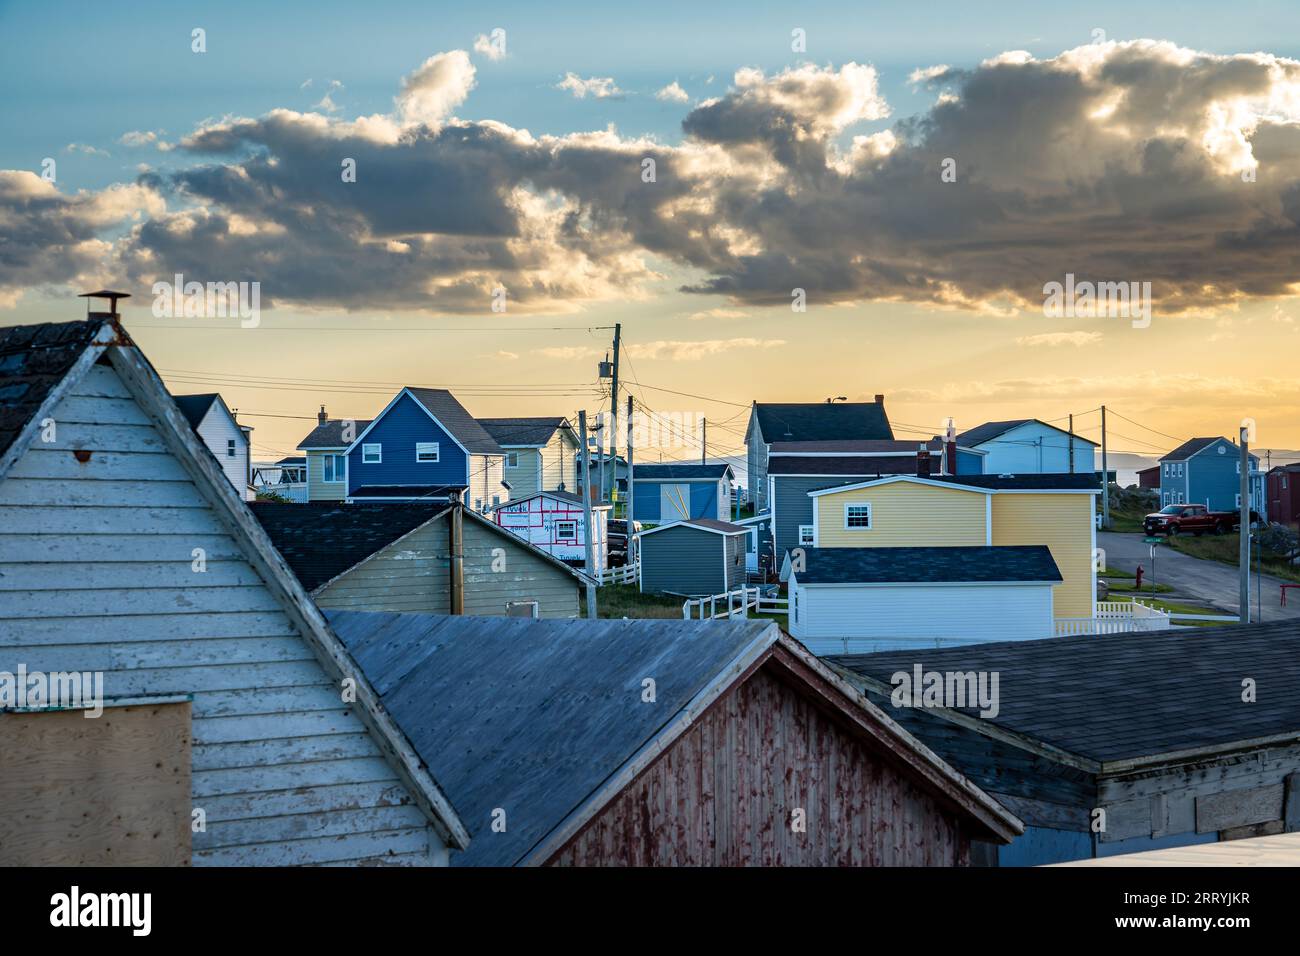 Blick auf Dächer und Häuser an der Ostküste mit Blick auf einen weit entfernten Sonnenuntergang am Atlantik in Bonavista Neufundland Kanada. Stockfoto